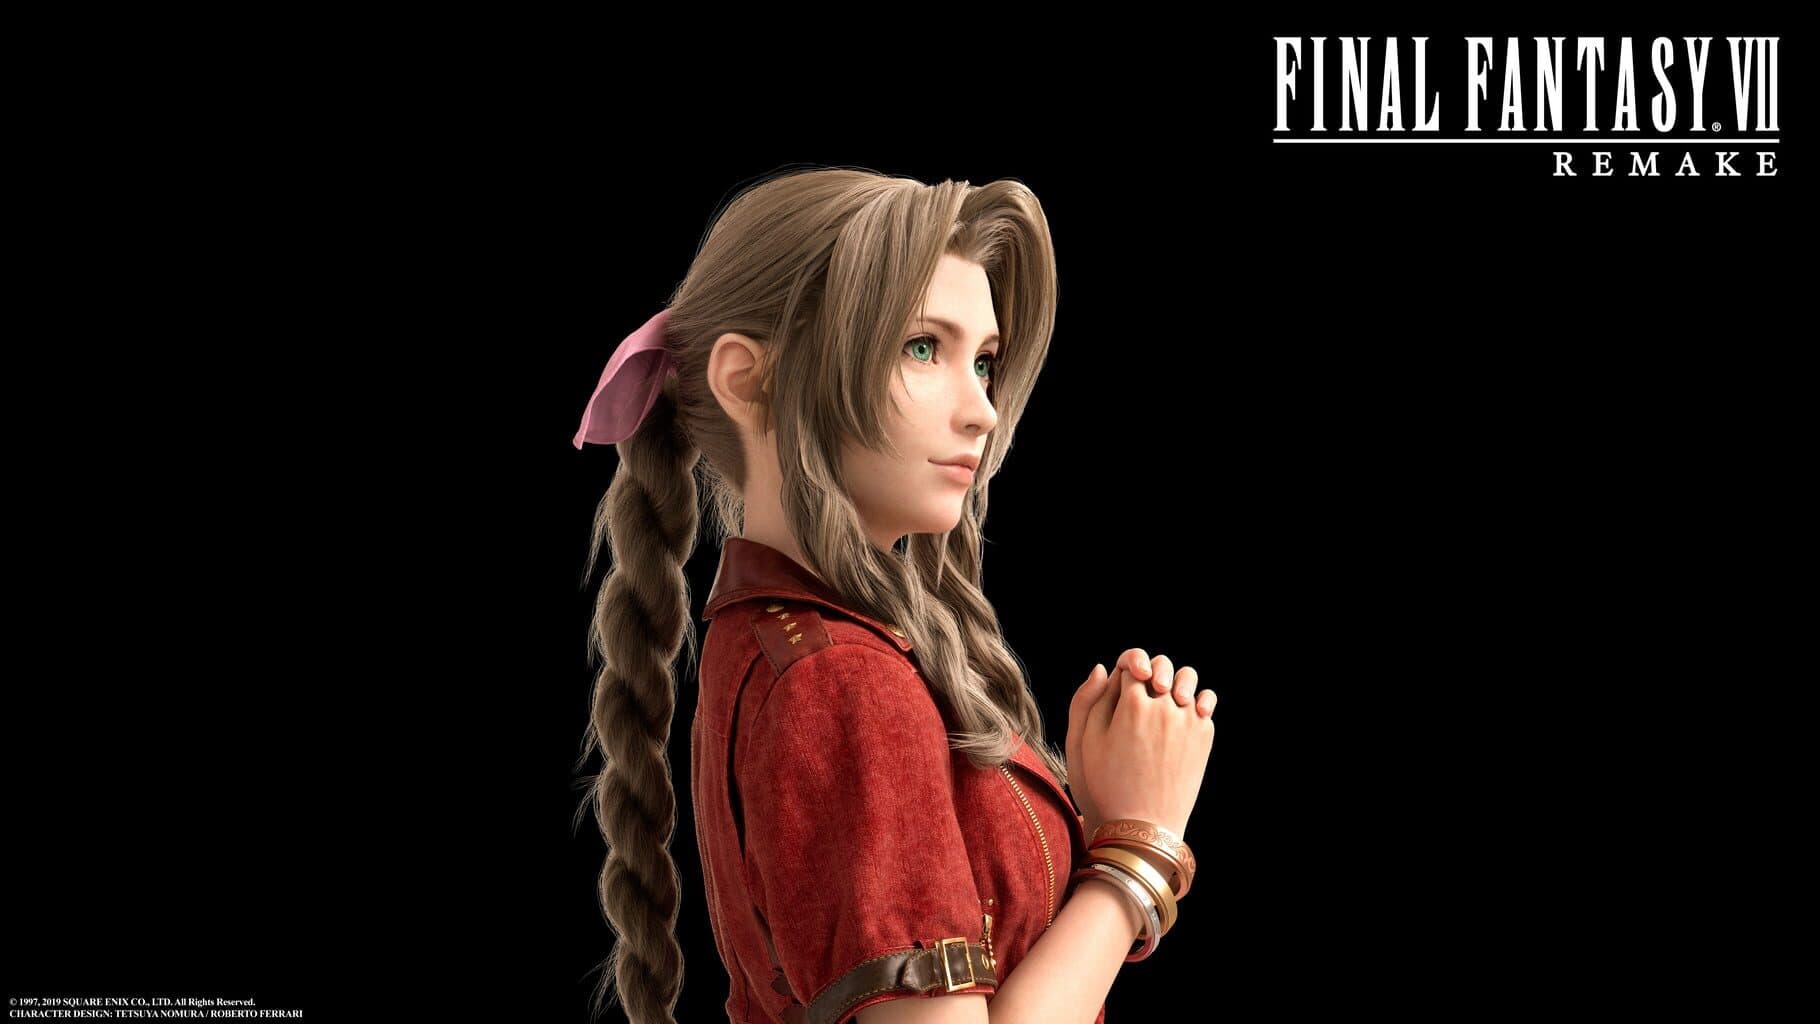 Final Fantasy VII Remake Image